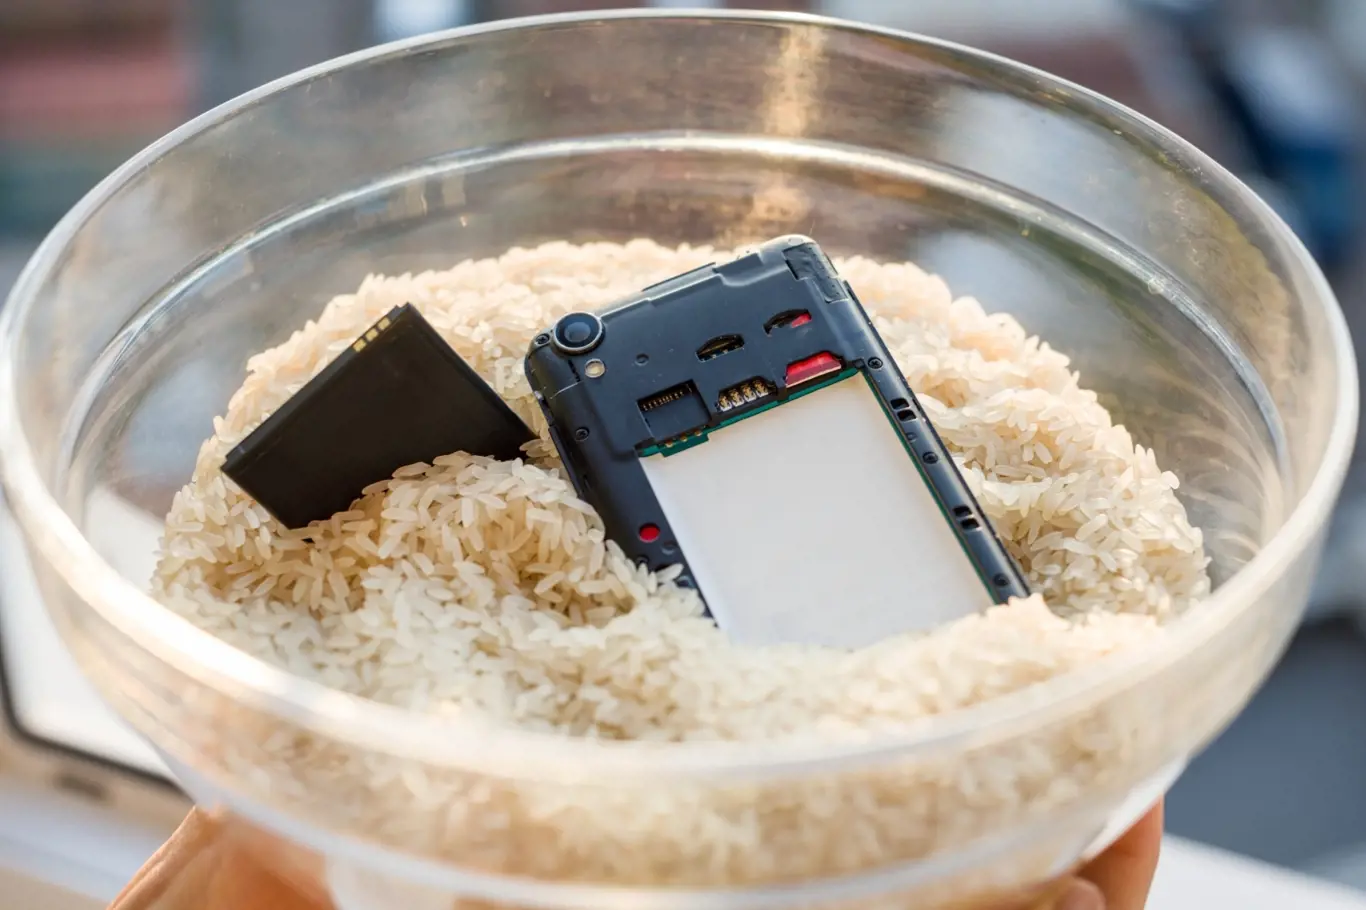 Rýže dokáže vytáhnout vodu a vlhkost i ze zatopeného telefonu